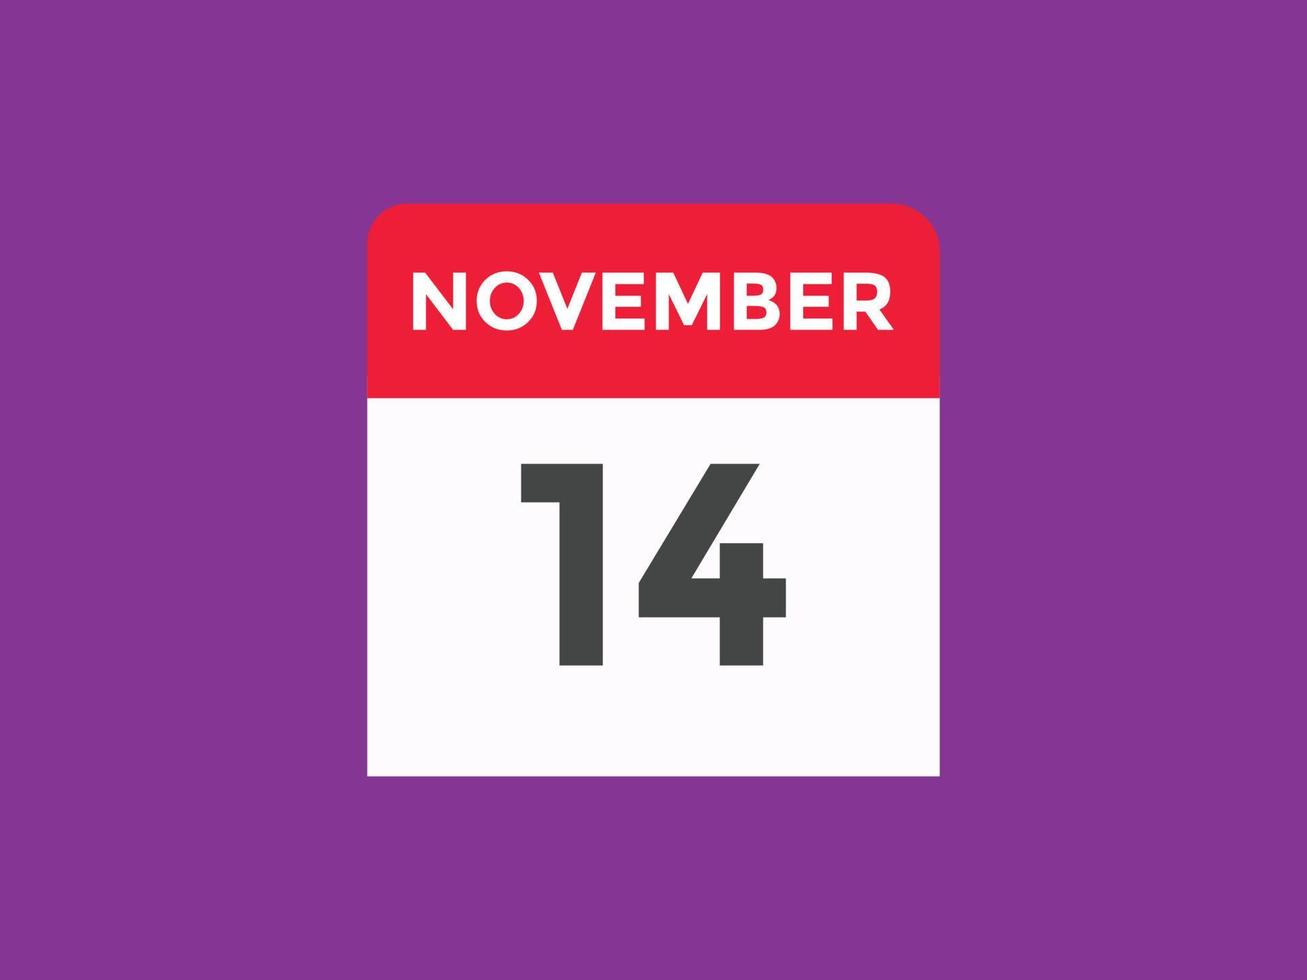 Recordatorio del calendario del 14 de noviembre. Plantilla de icono de calendario diario del 14 de noviembre. plantilla de diseño de icono de calendario 14 de noviembre. ilustración vectorial vector